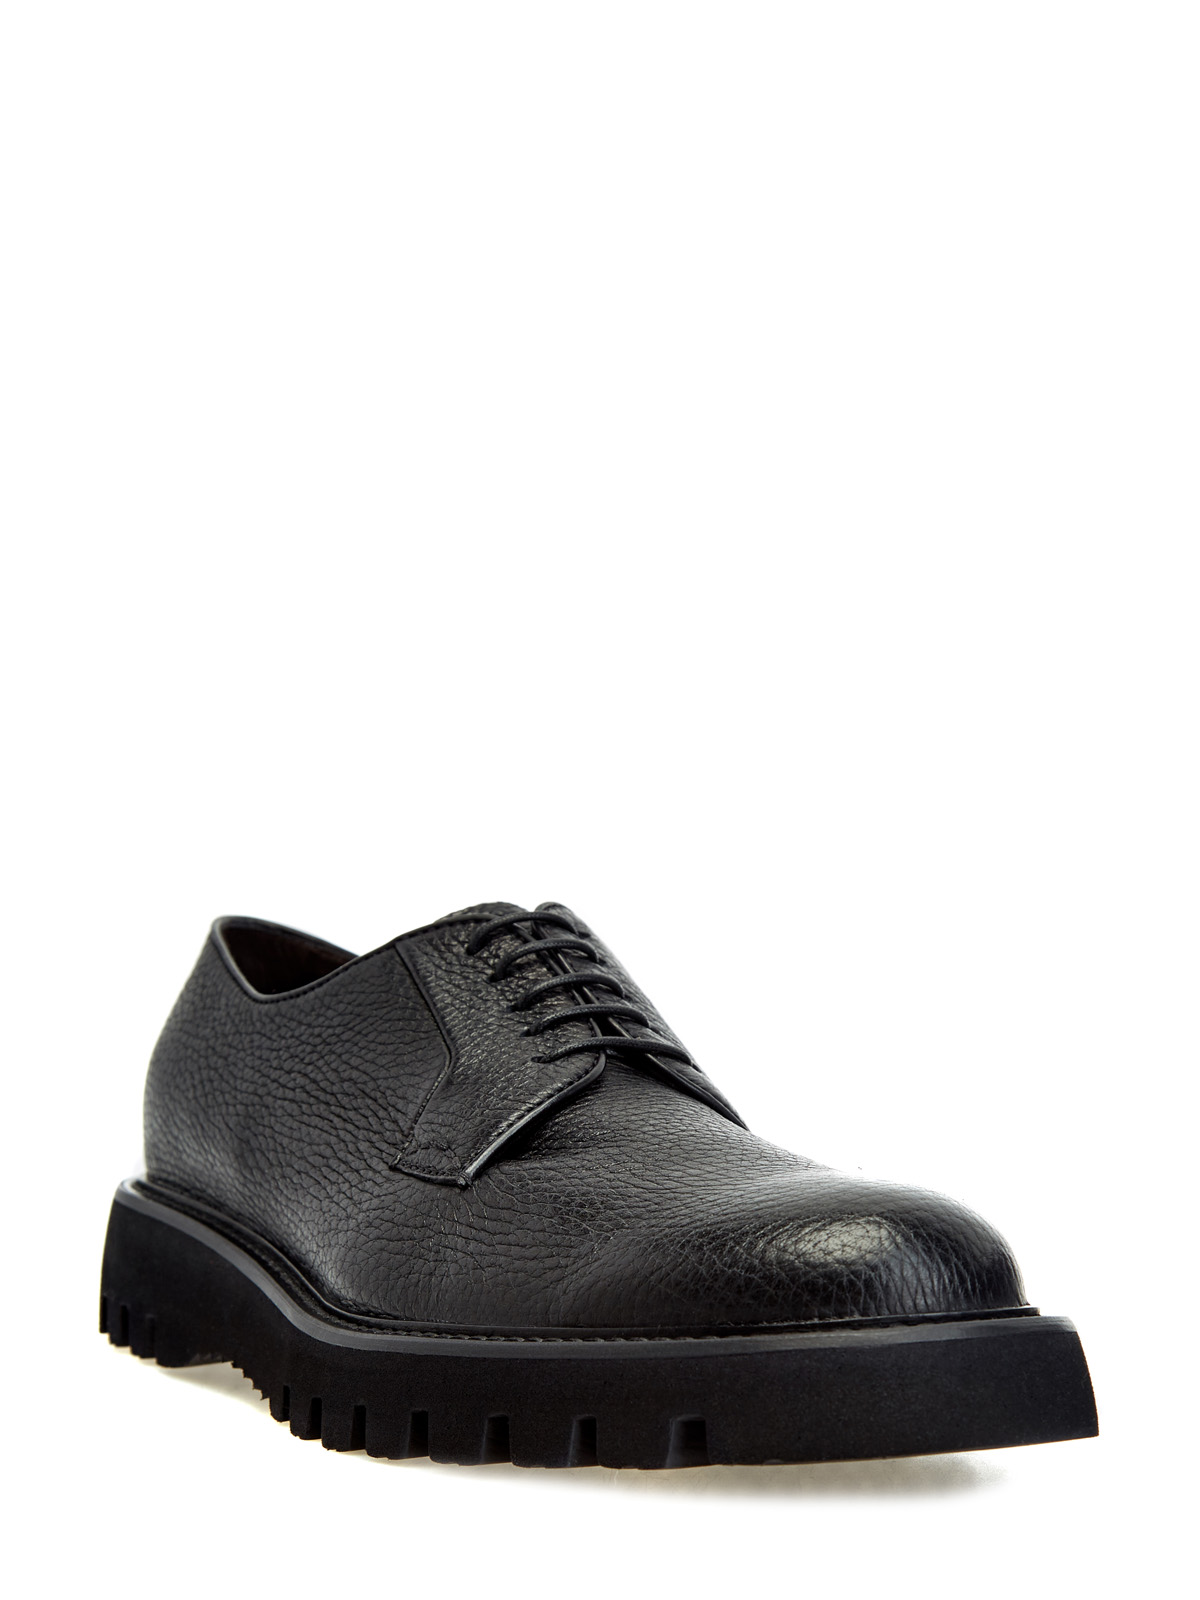 Кожаные ботинки-дерби на массивной подошве BARRETT, цвет черный, размер 40.5;41;41.5;42.5;43;43.5;44;45 - фото 2